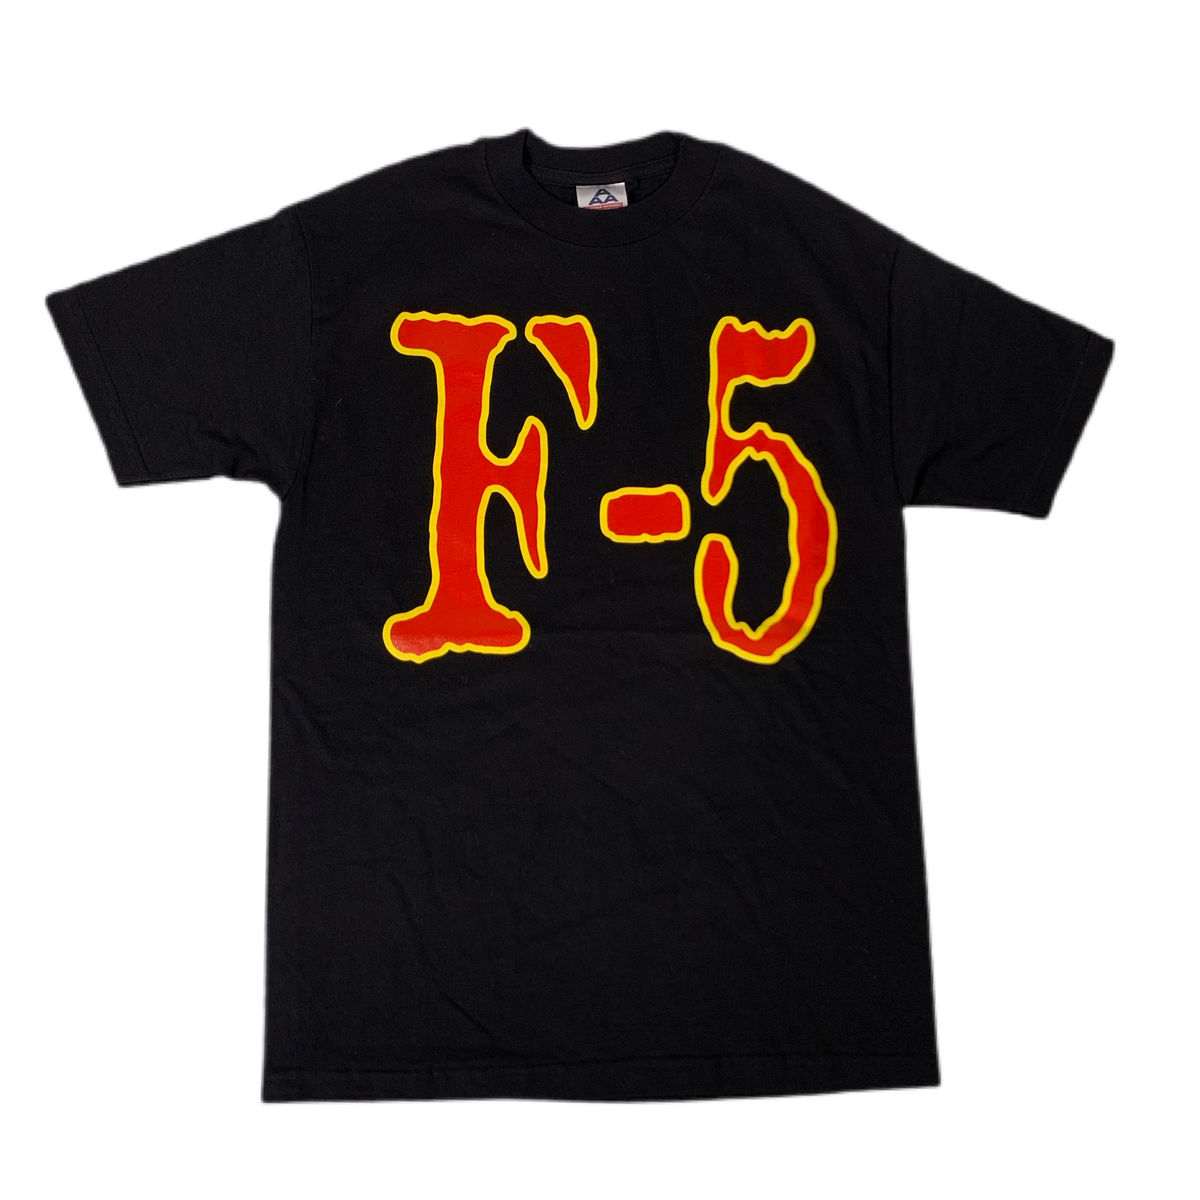 Vintage Brock Lesnar “F-5” T-Shirt